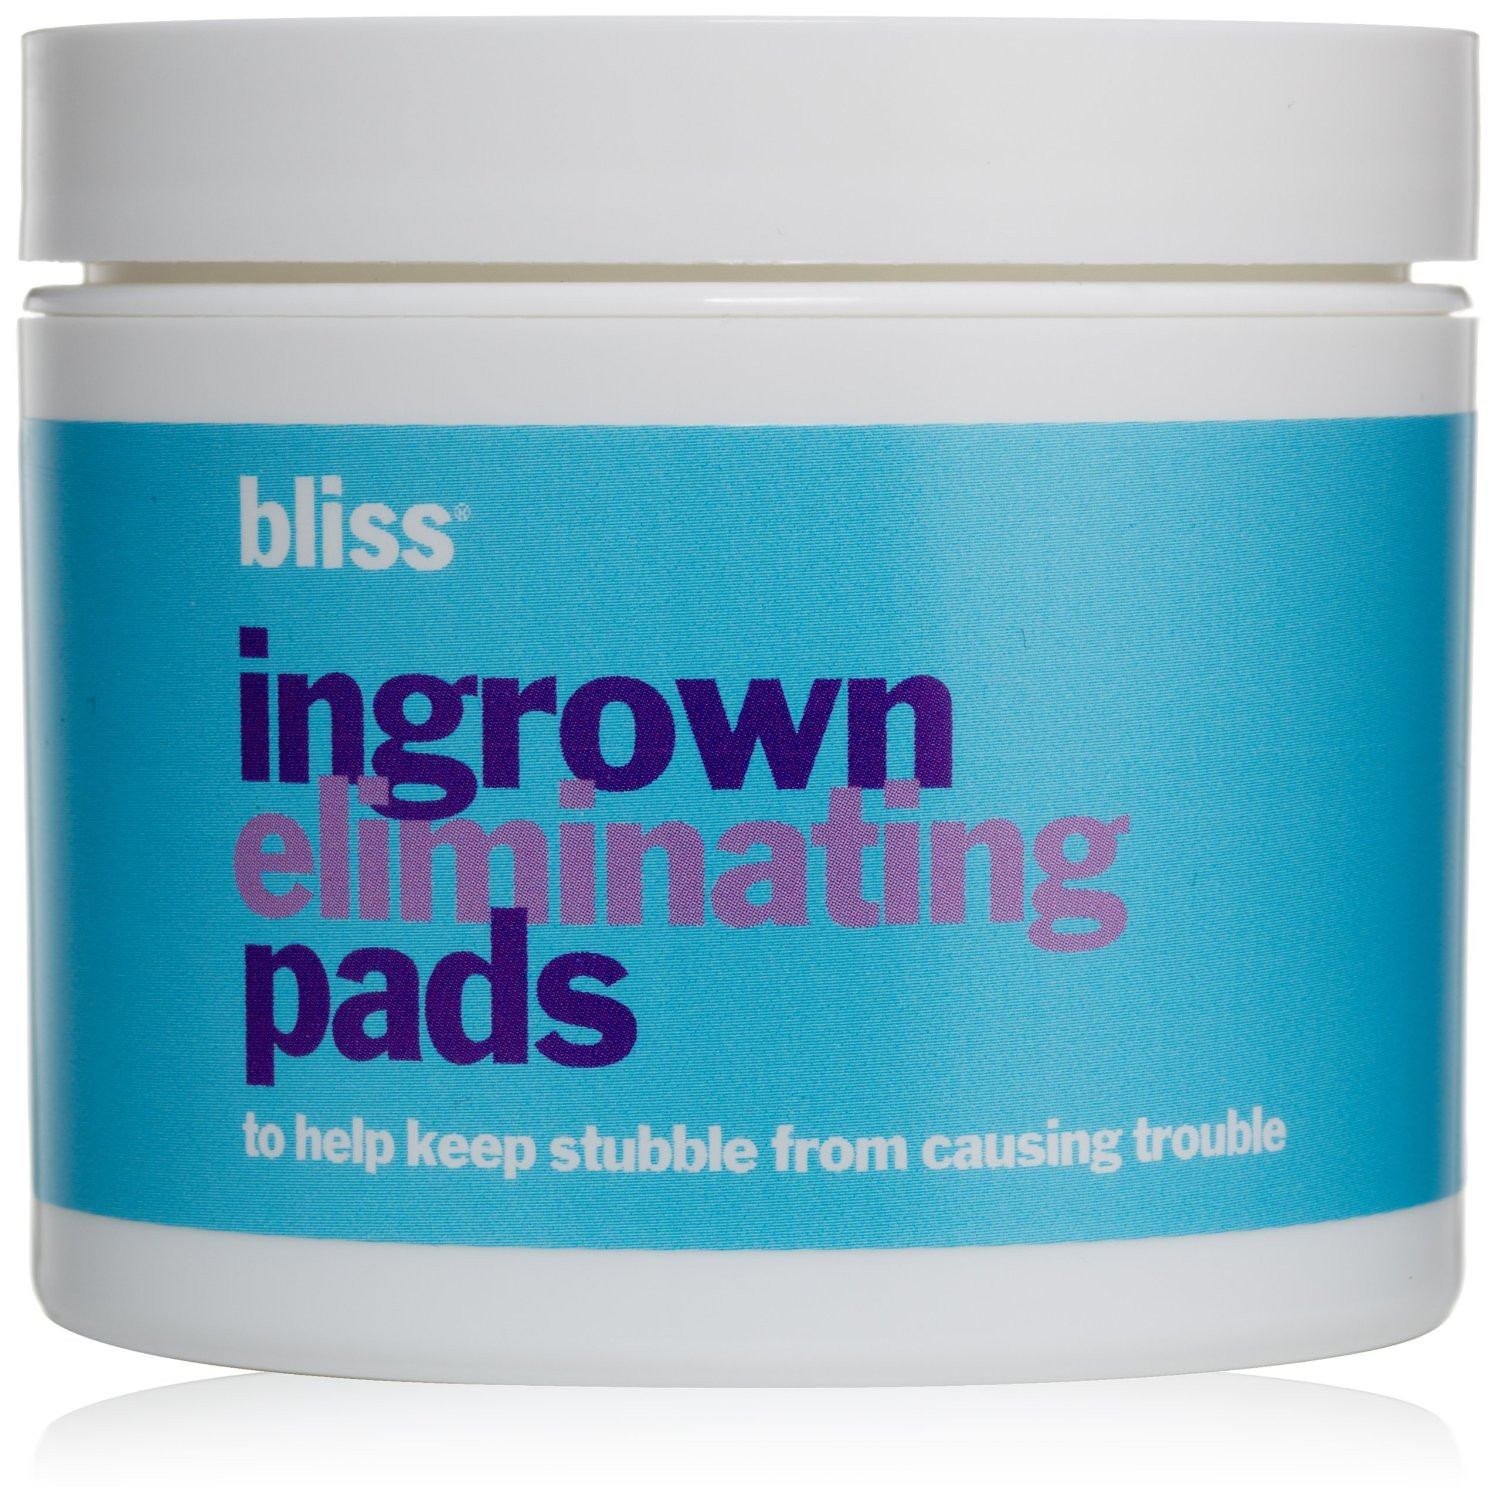 Bliss ingrown eliminating pads